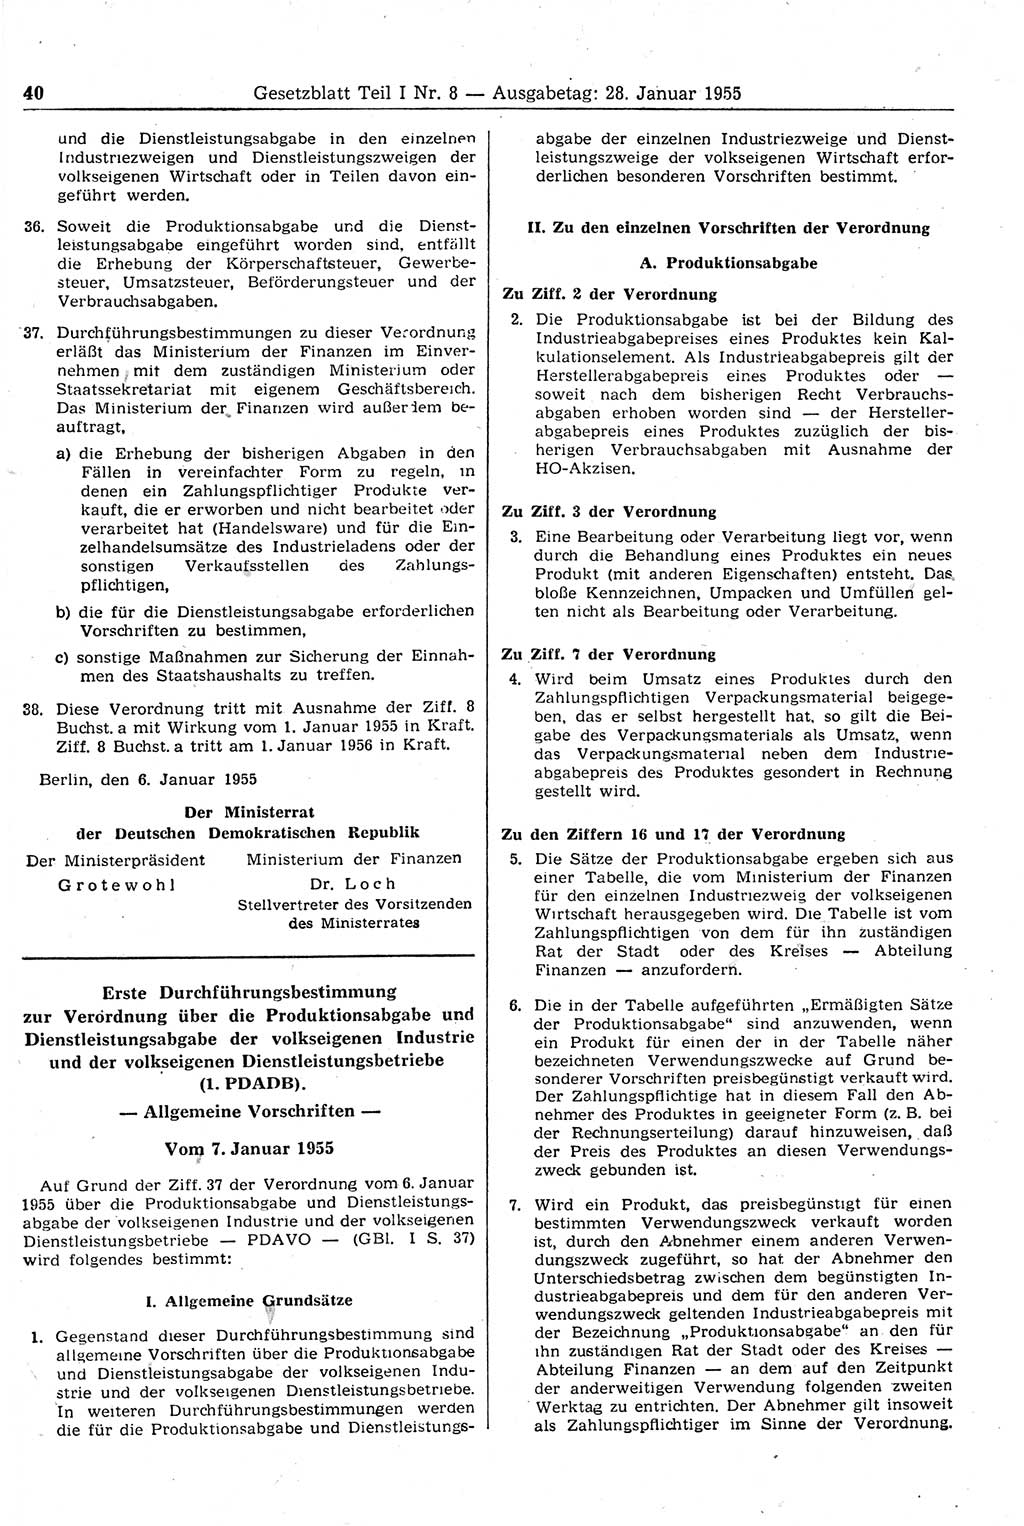 Gesetzblatt (GBl.) der Deutschen Demokratischen Republik (DDR) Teil Ⅰ 1955, Seite 40 (GBl. DDR Ⅰ 1955, S. 40)